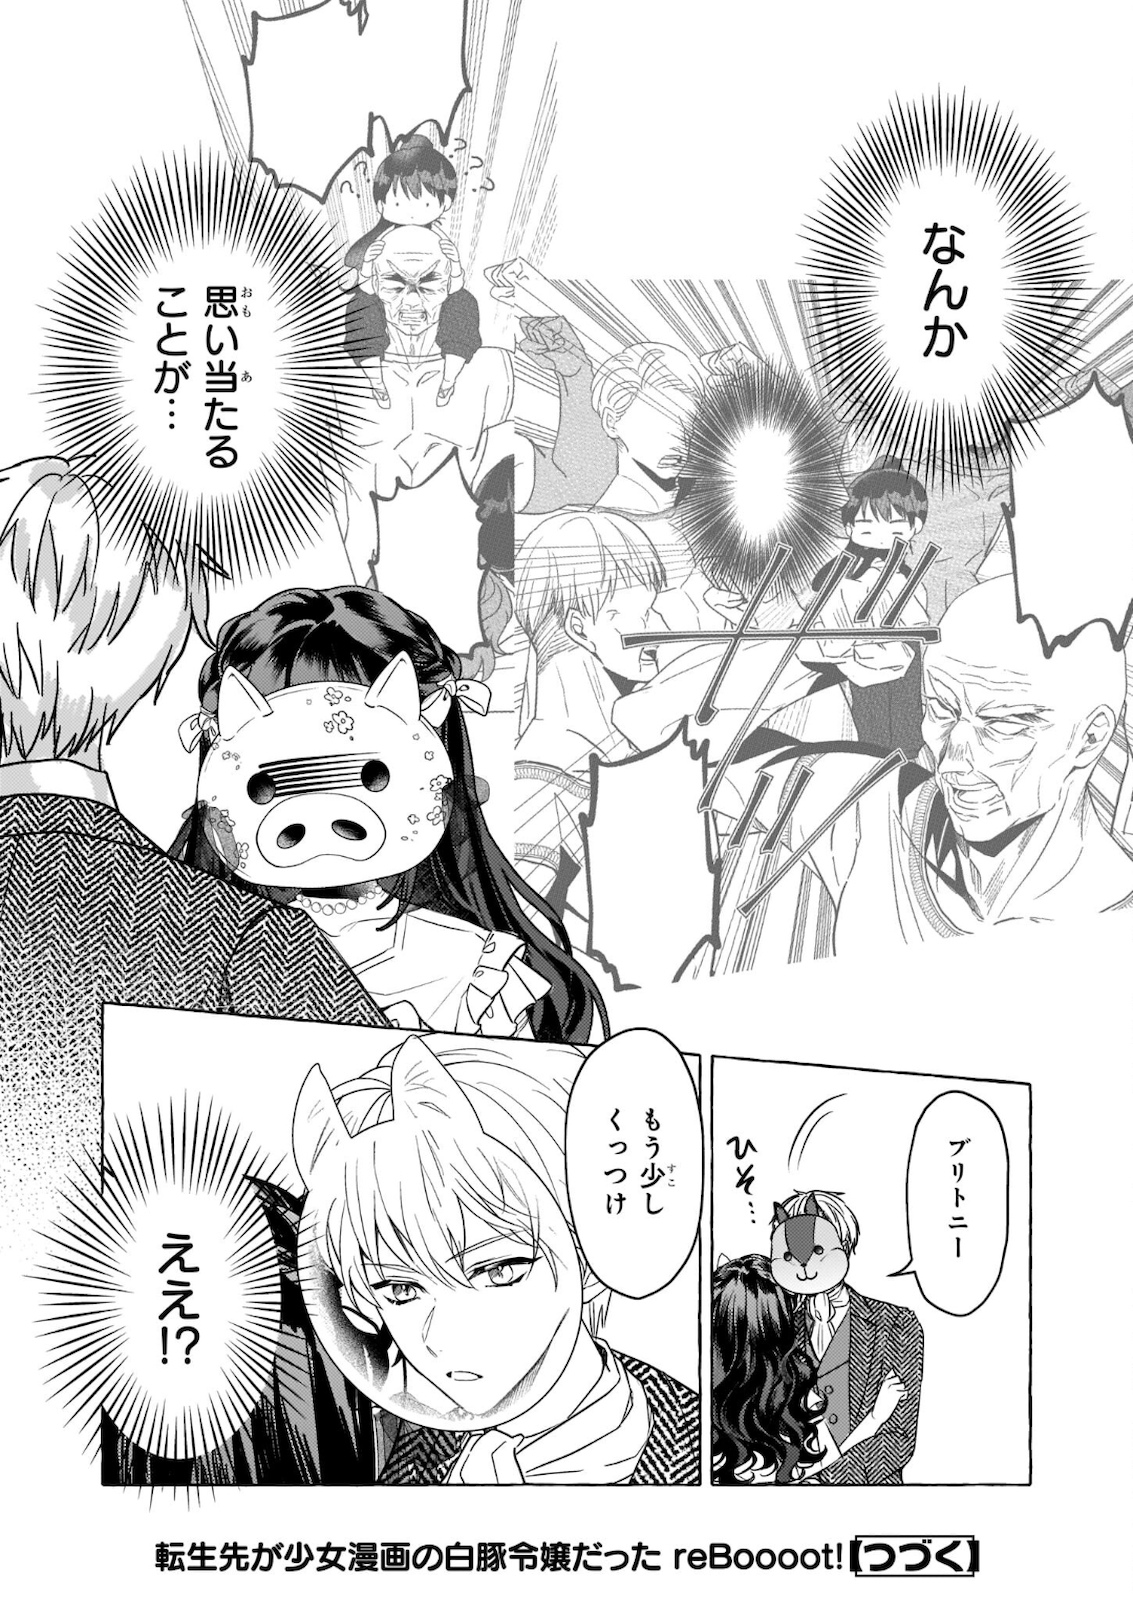 Tenseisaki ga Shoujo Manga no Shirobuta Reijou datta reBoooot! - Chapter 10.2 - Page 18